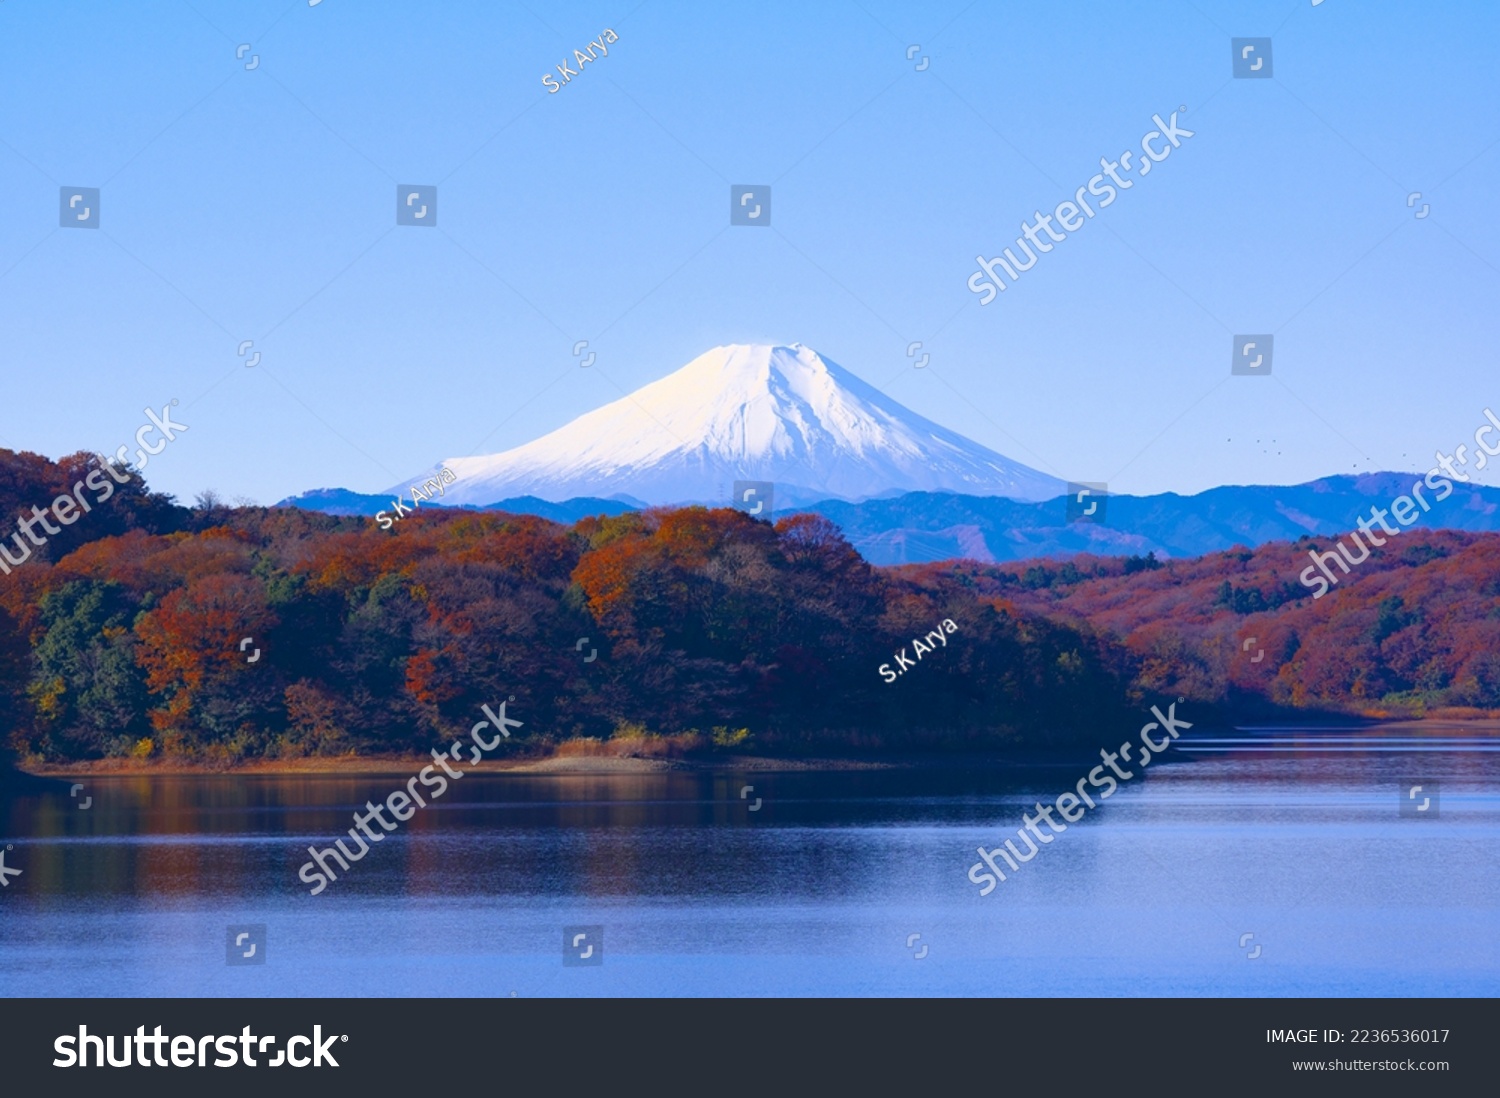 Snowcapped Mount fuji in Japan #2236536017